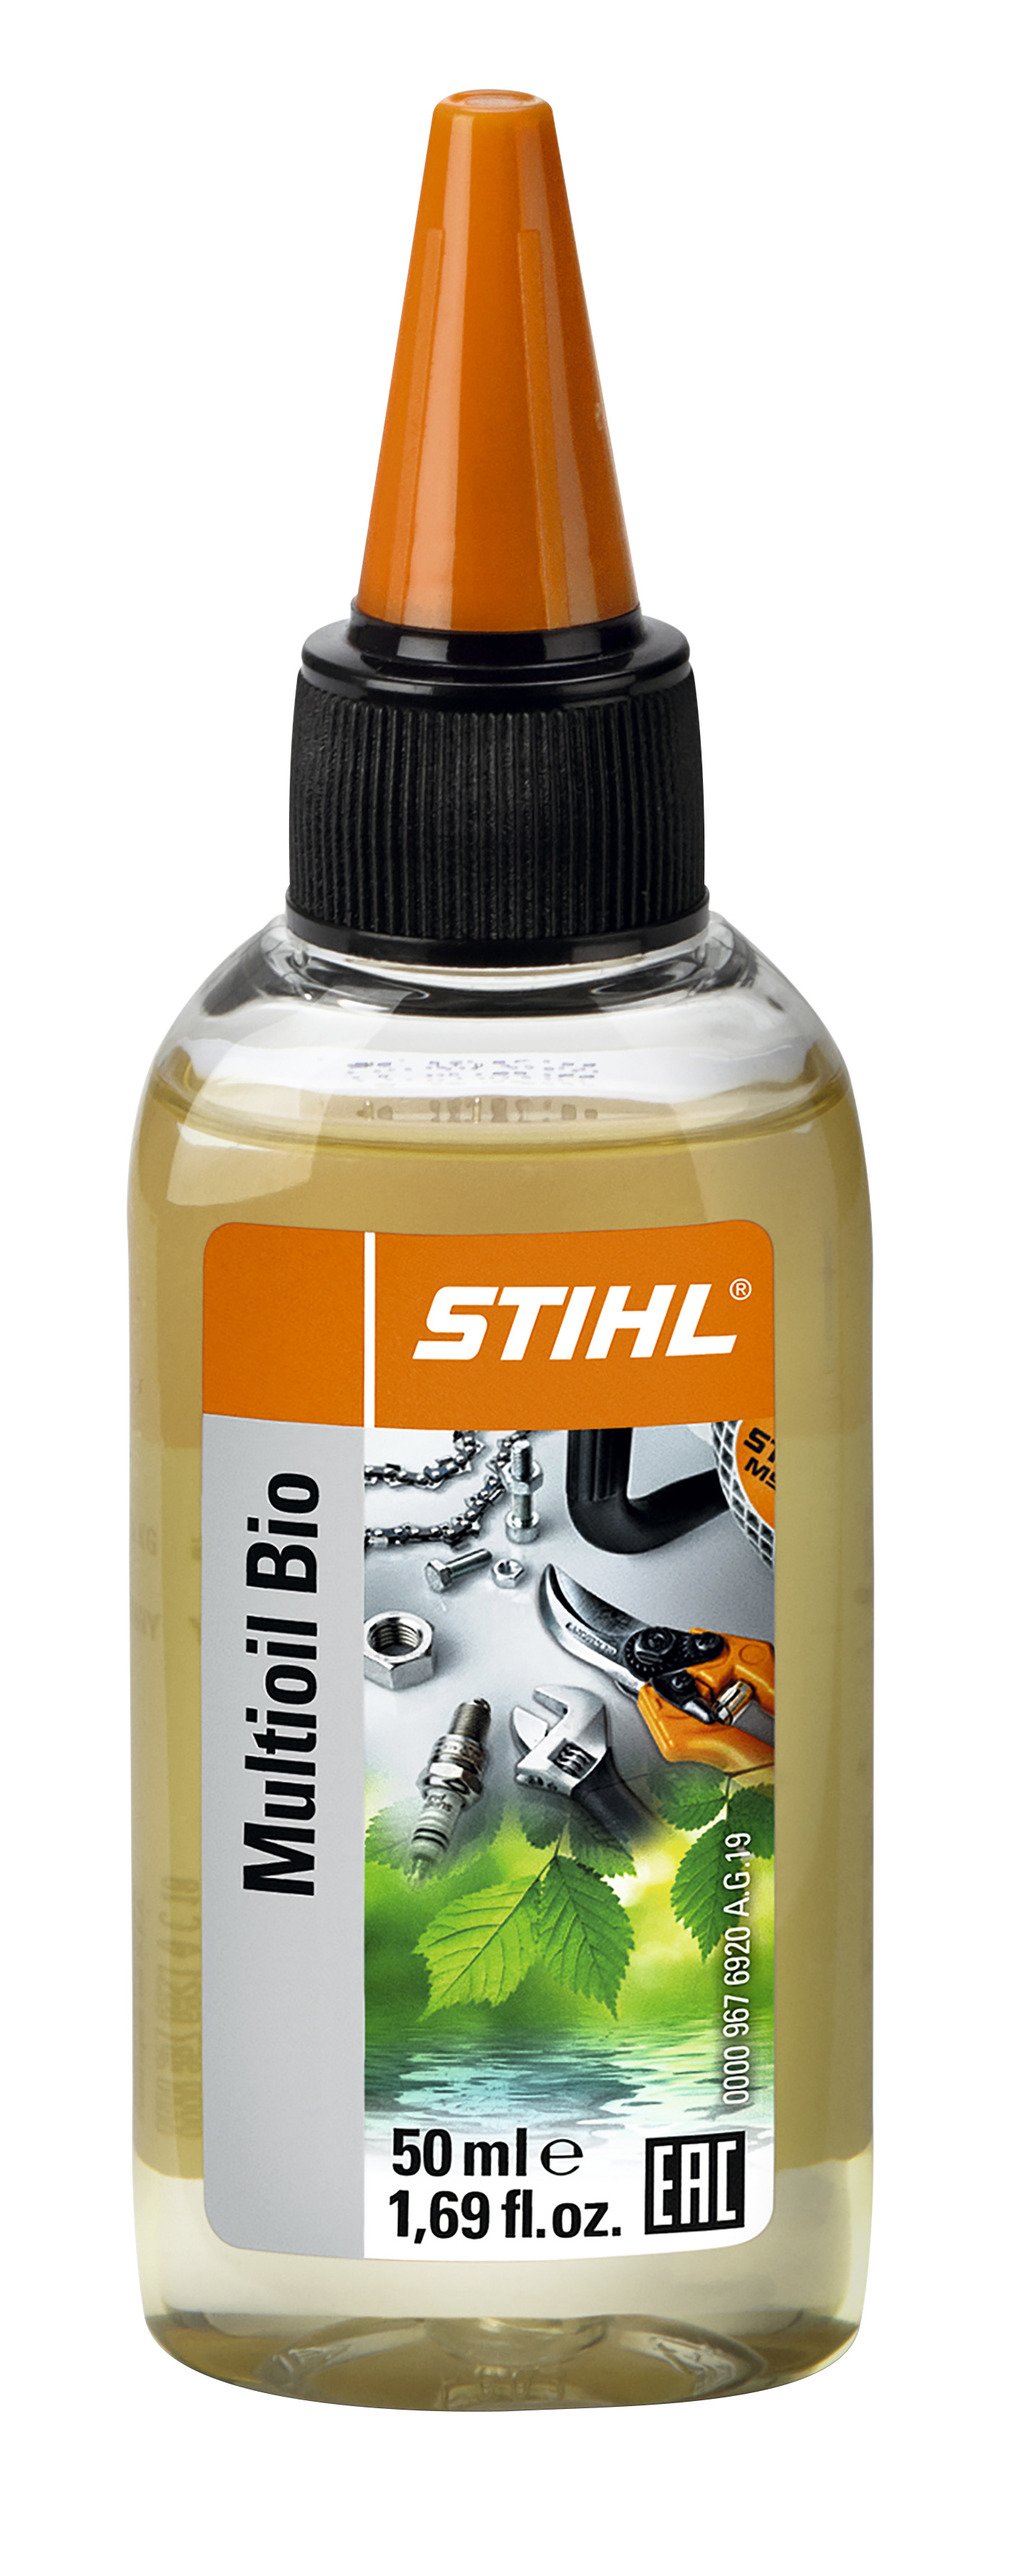 STIHL CHAIN OIL FOR GTA 26